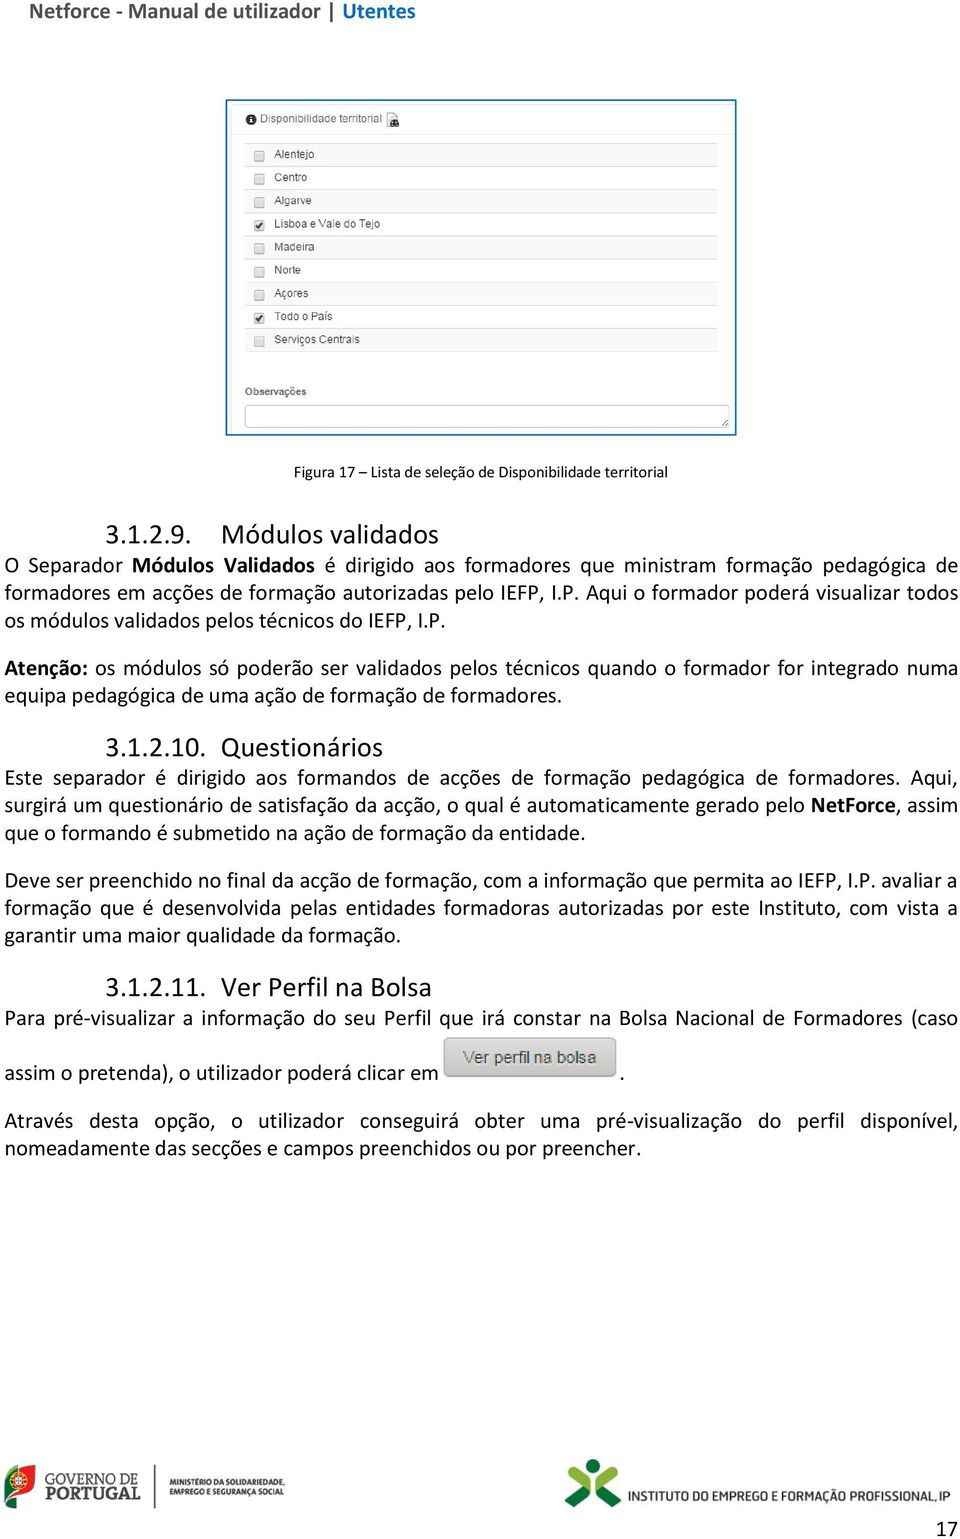 Manual de Utilizador Utentes V01 DEPARTAMENTO DE FORMAÇÃO PROFISSIONAL -  PDF Free Download